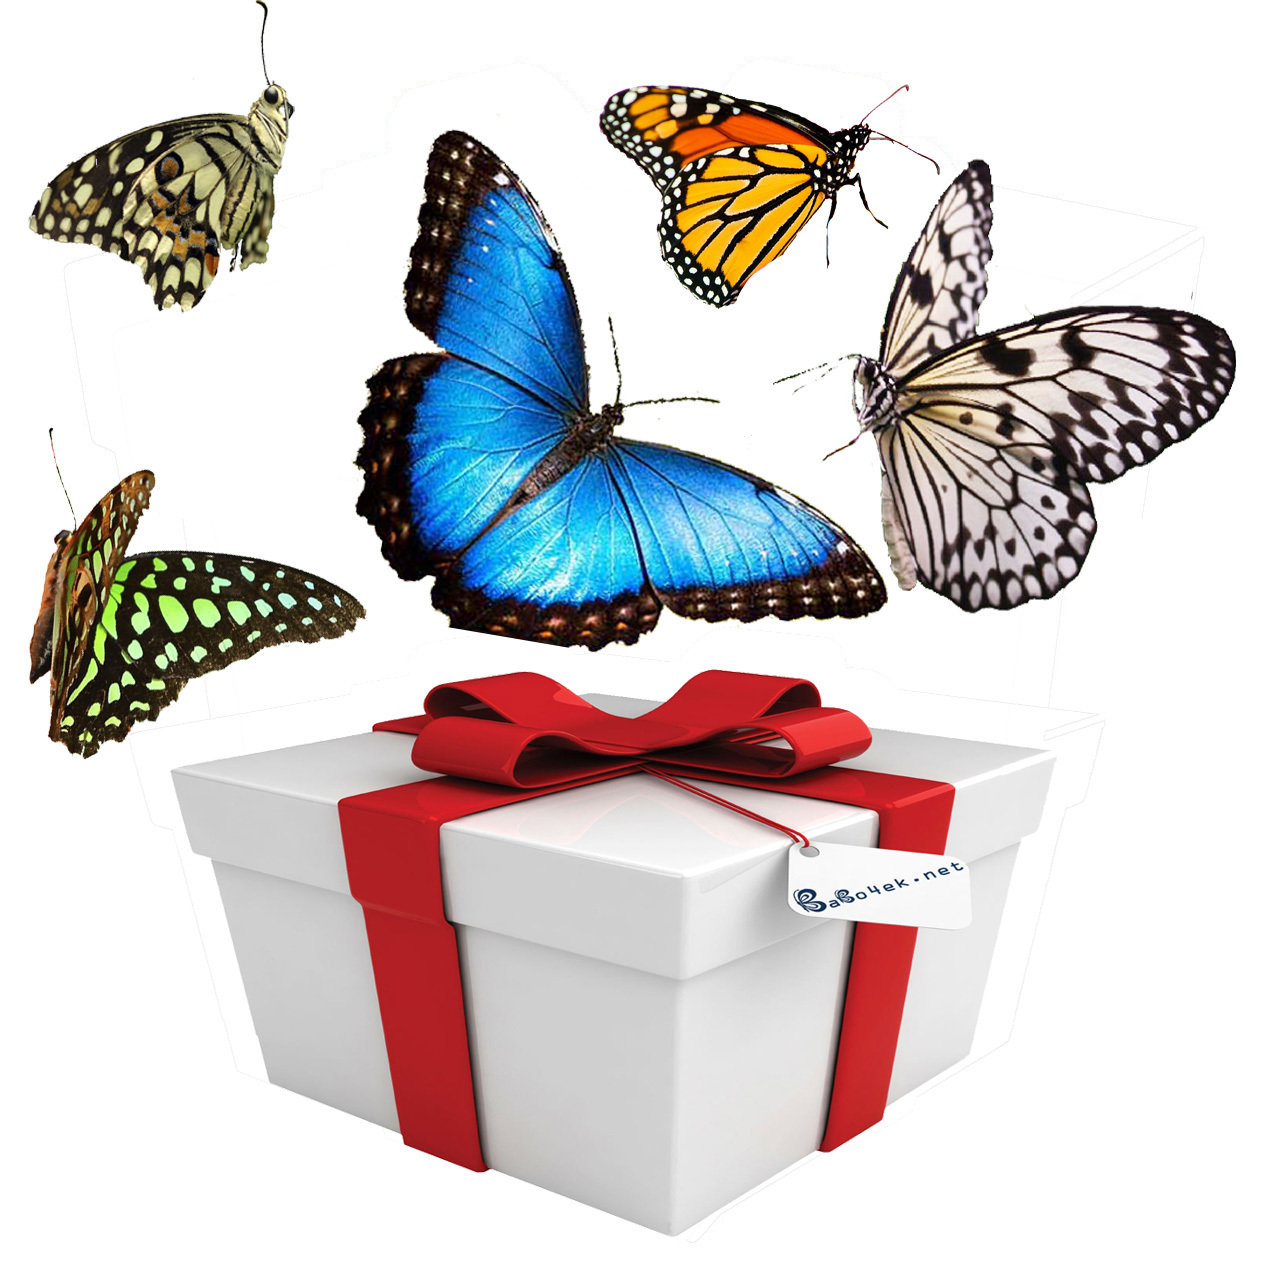 Живой сюрприз. Бабочки живые в подарок в коробке. Живые бабочки в подарок. Коробка с бабочками. Бабочки в коробке подарок.